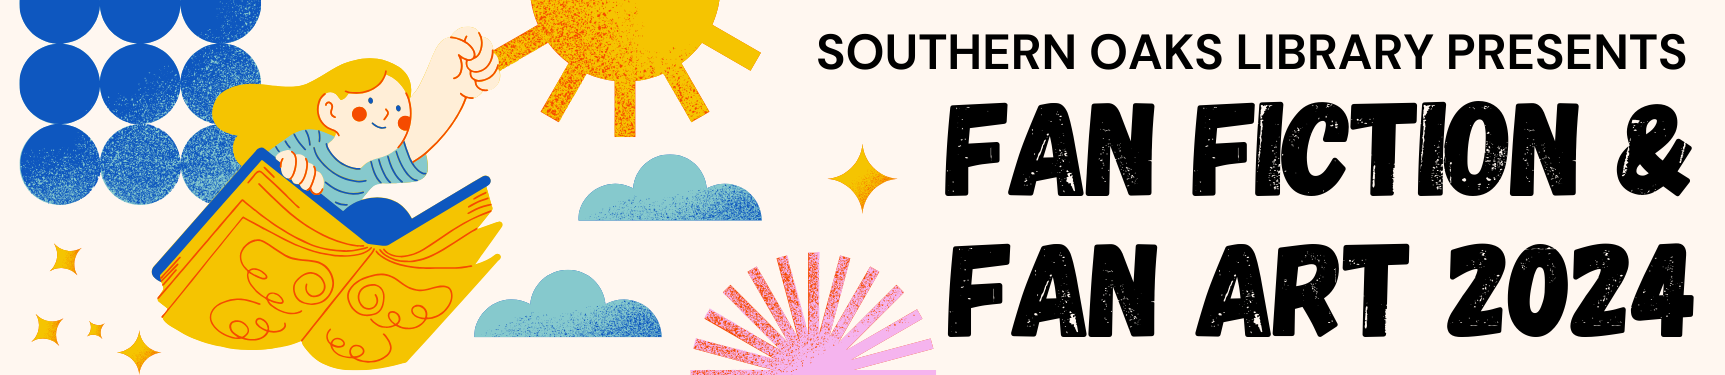 Southern Oaks Library Presents Fan Fiction and Fan Art 2024